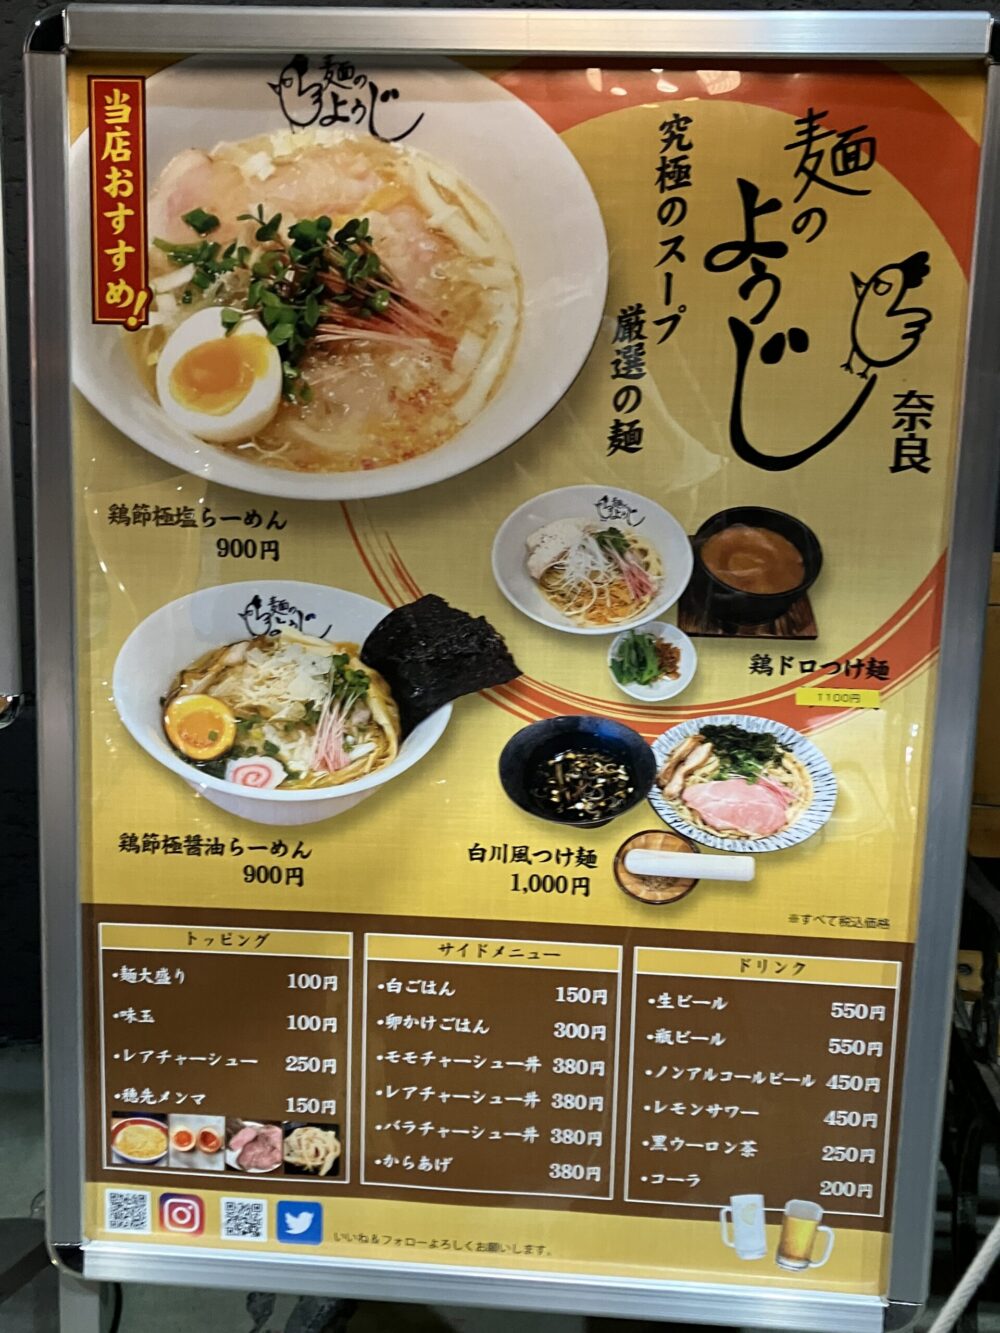 麺のようじ奈良のメニュー写真